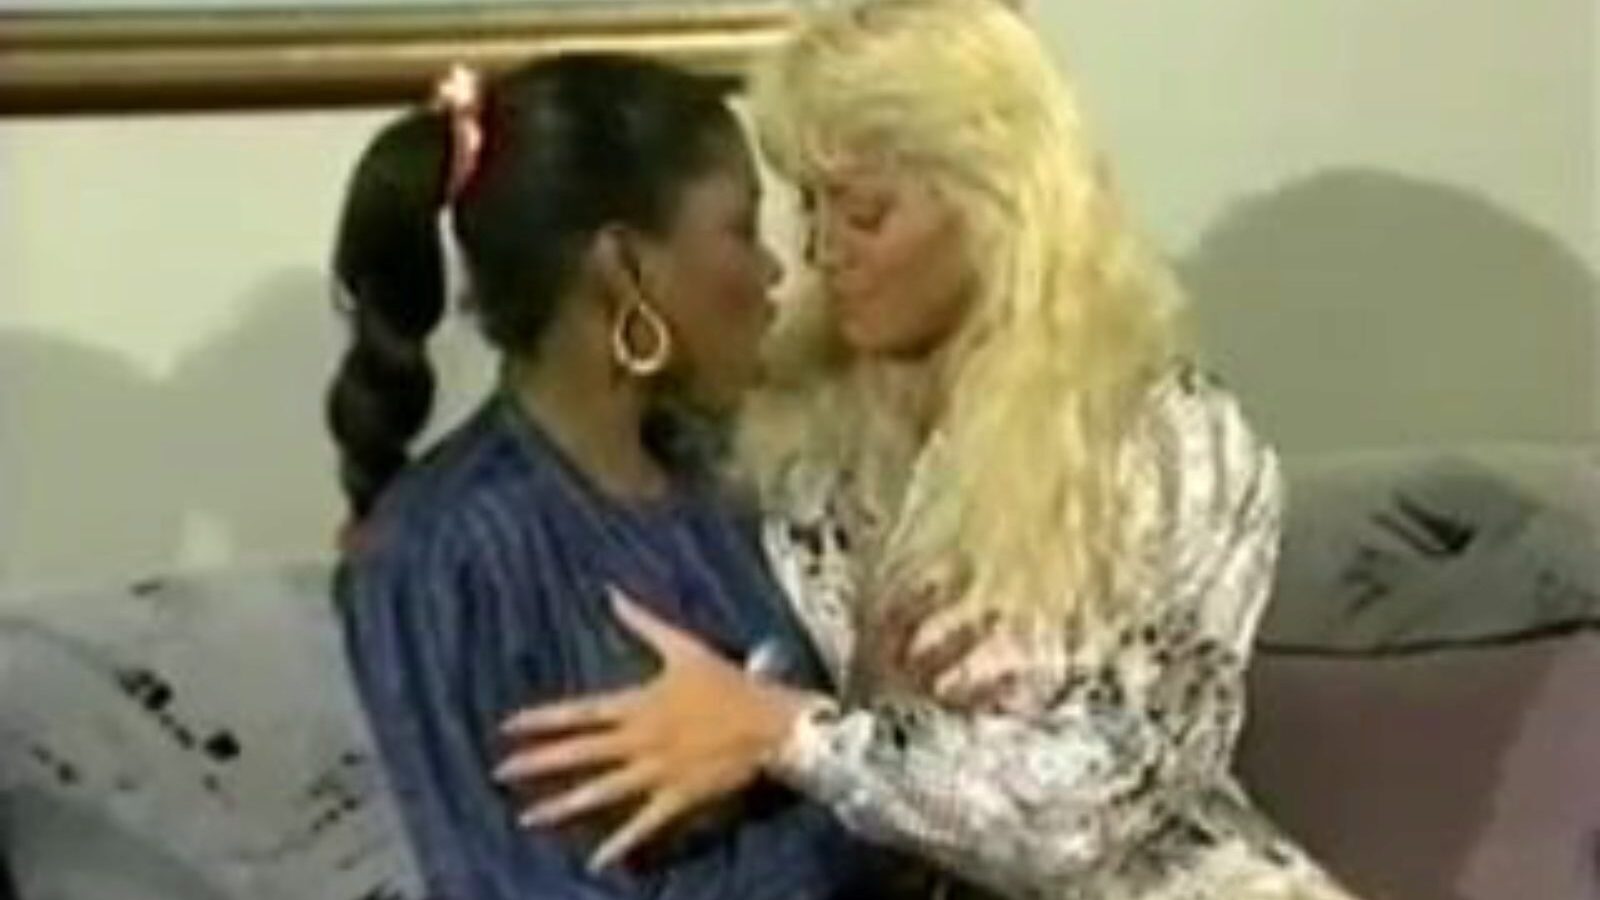 beverlee en ebony: gratis vies pratende lesbische porno video 2e bekijk beverlee en ebony buis vrijen video gratis voor iedereen op xhamster, met de meest sexy verzameling vuile pratende lesbische bearhug & lesbische sexfight porno clip scènes